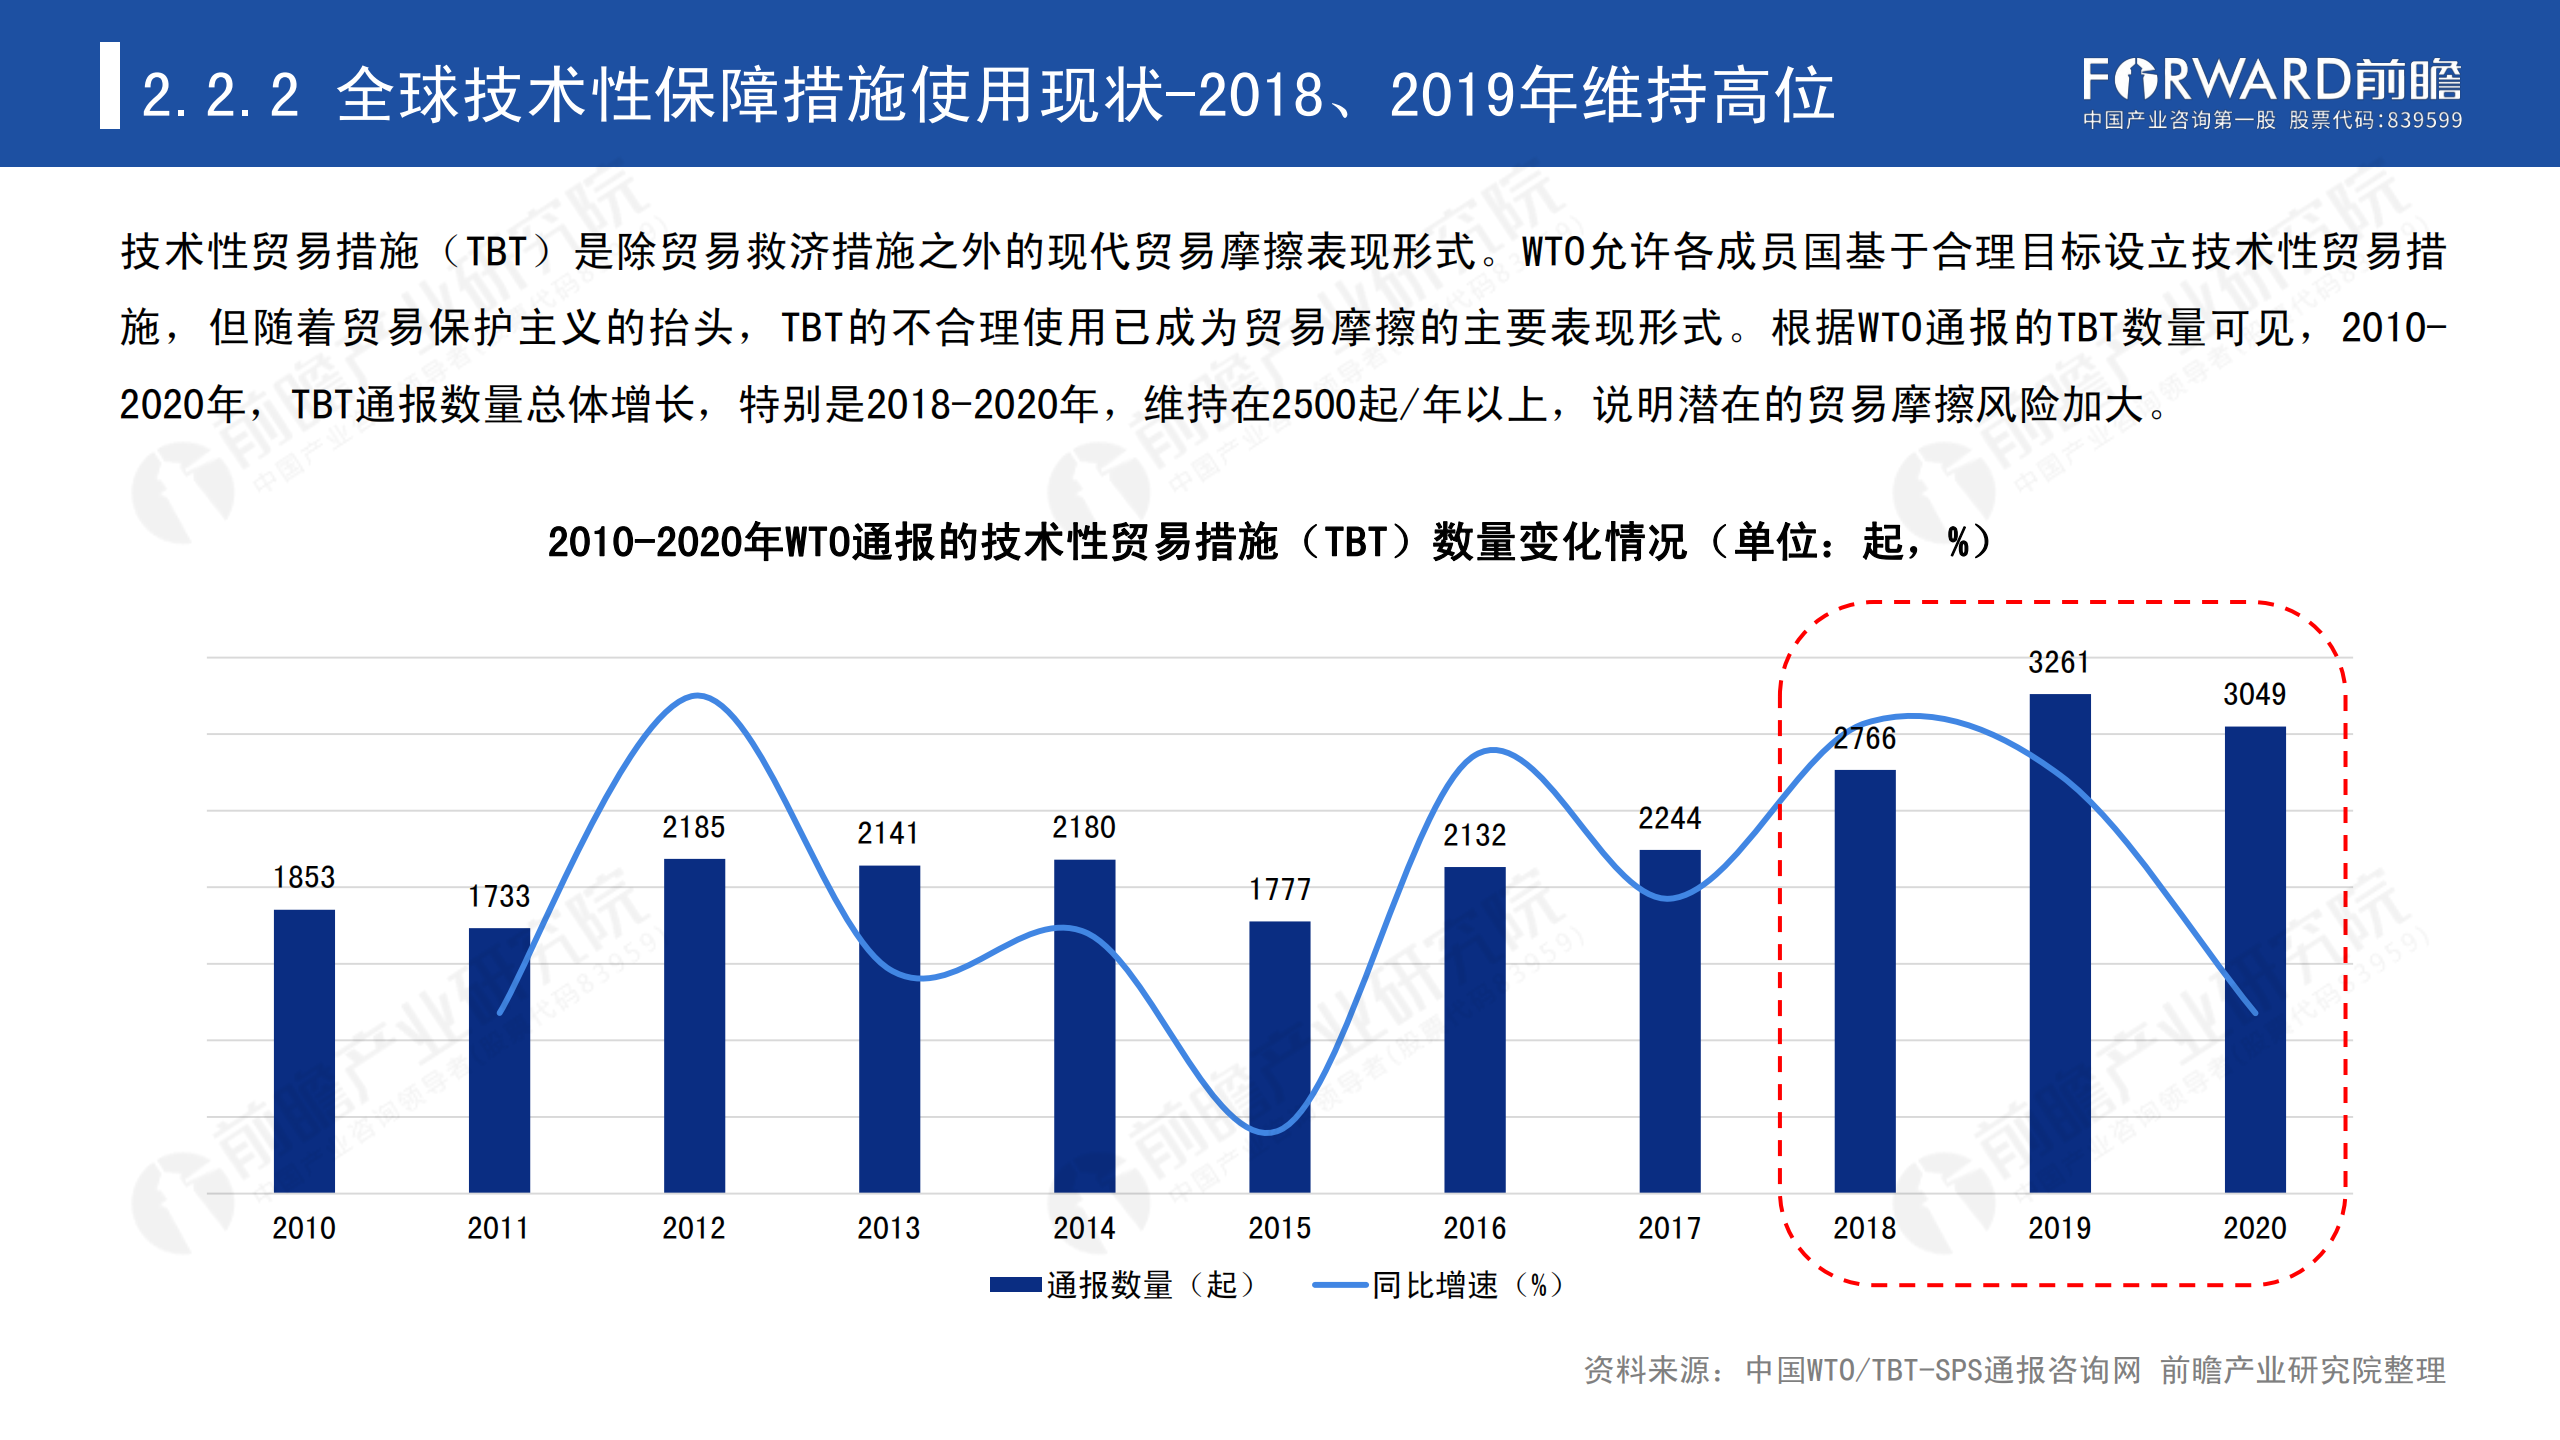 2020年中国贸易摩擦全景回顾-前瞻-2021-64页_16.png